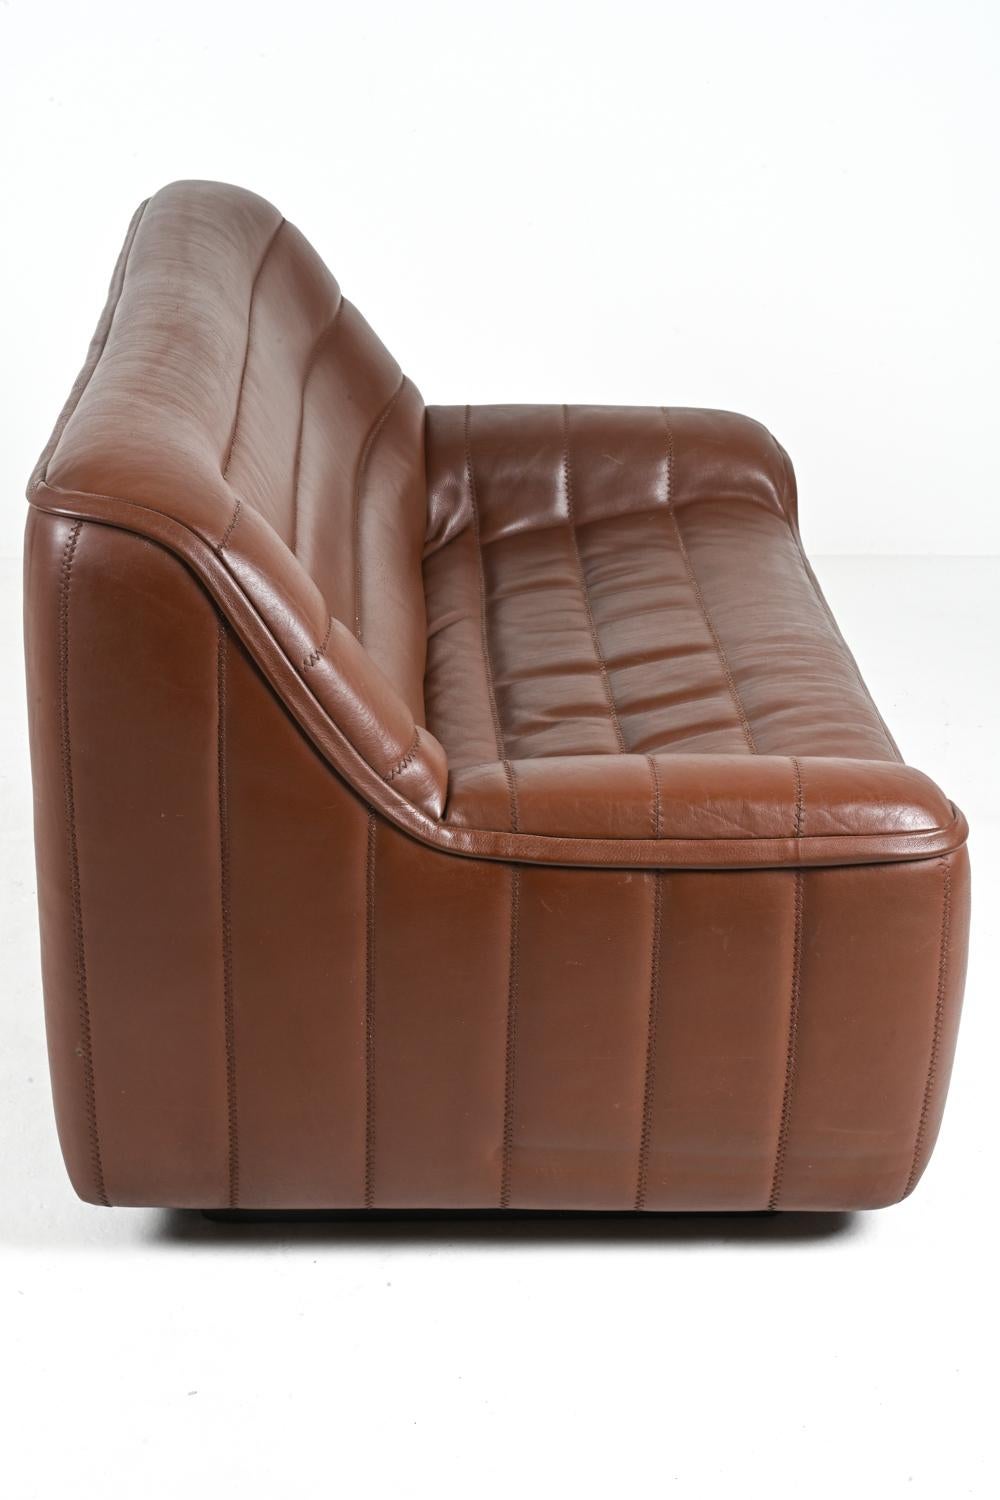 De Sede DS-84 Zweisitzer-Sofa aus Leder, ca. 1970er Jahre im Angebot 10